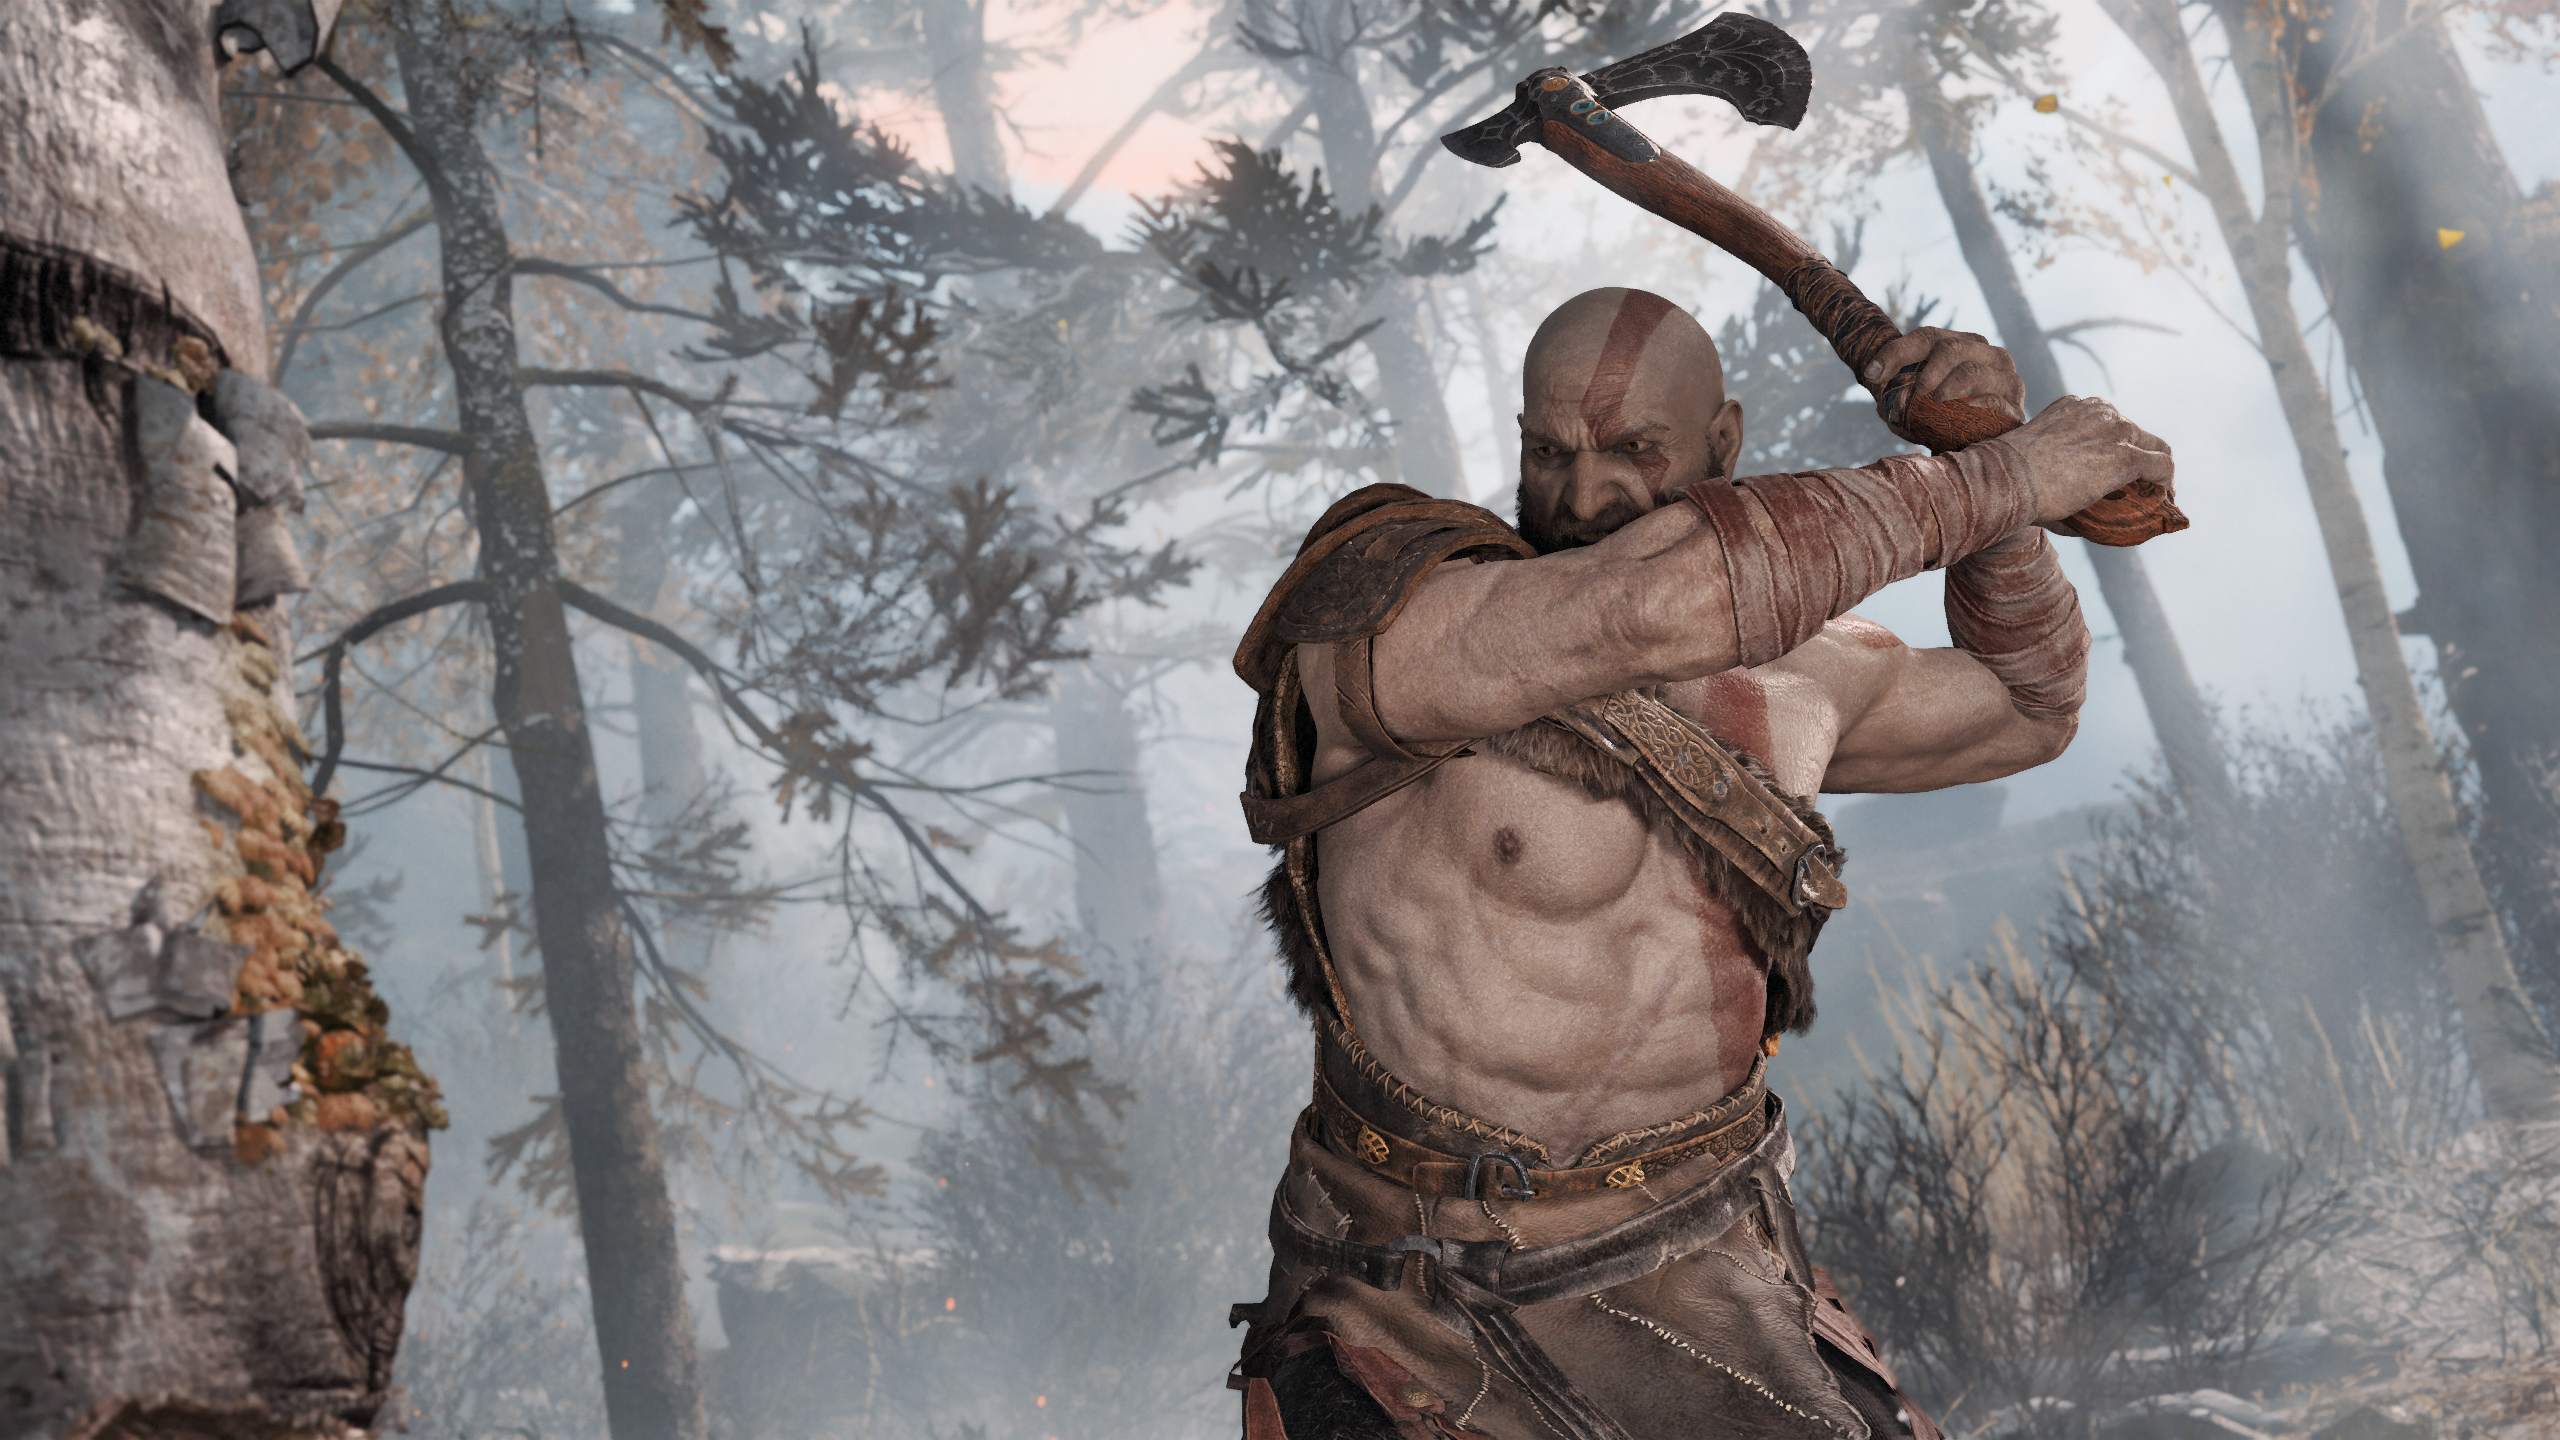 Kratos swinging his leviathan axe